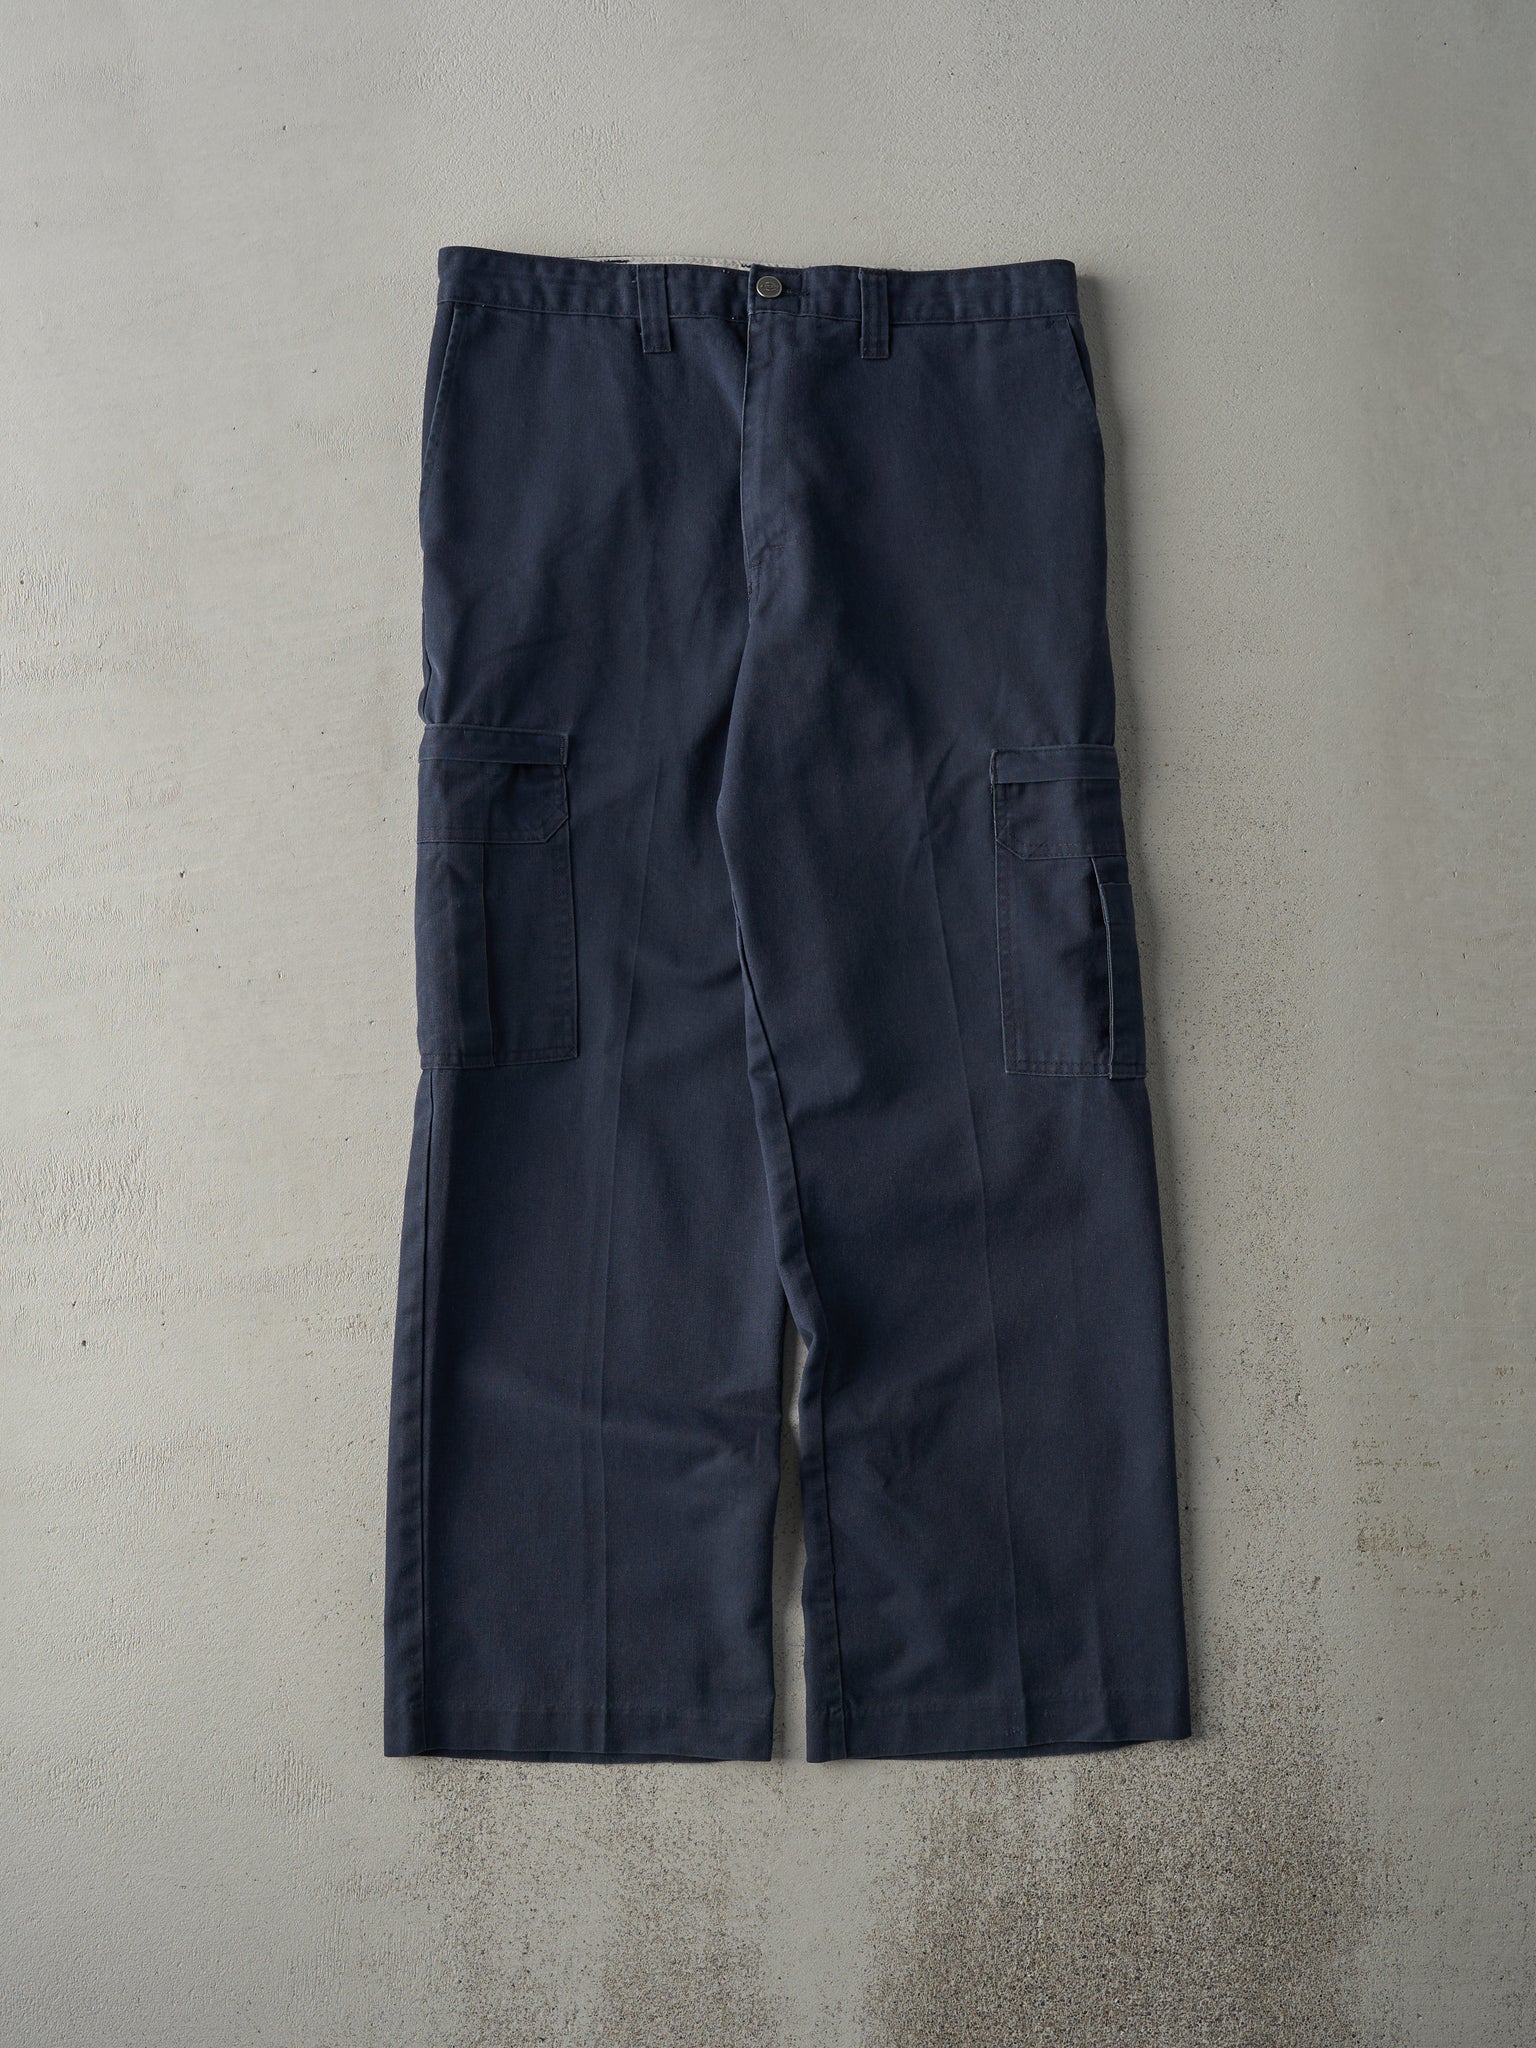 Vintage 90s Faded Navy Dickies Cargo Work Pants (34x29)